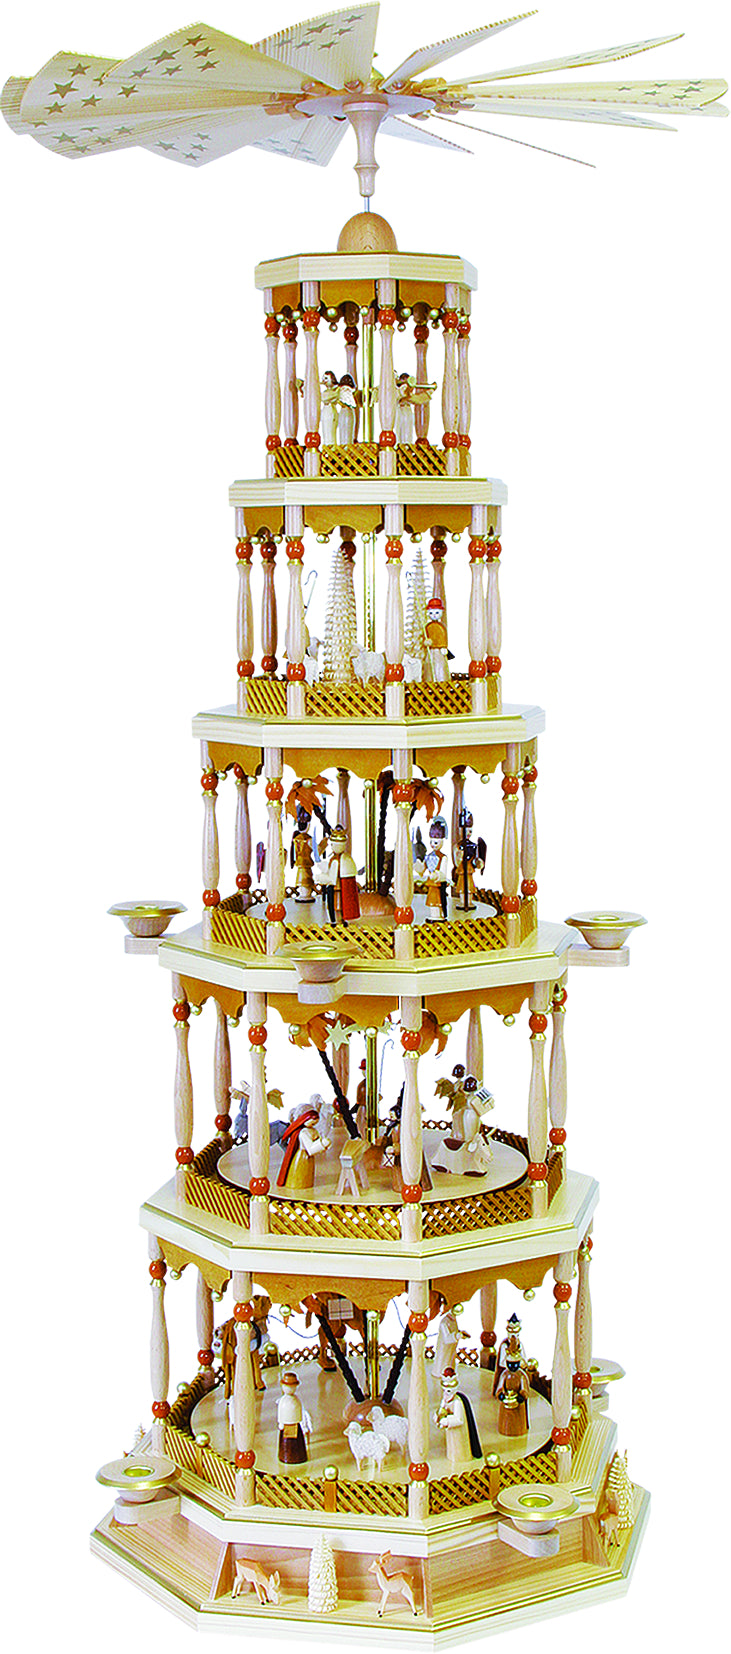 Glässer Arte Popular "pirámide del nacimiento de Cristo 5 pisos con juguetes" 123cm